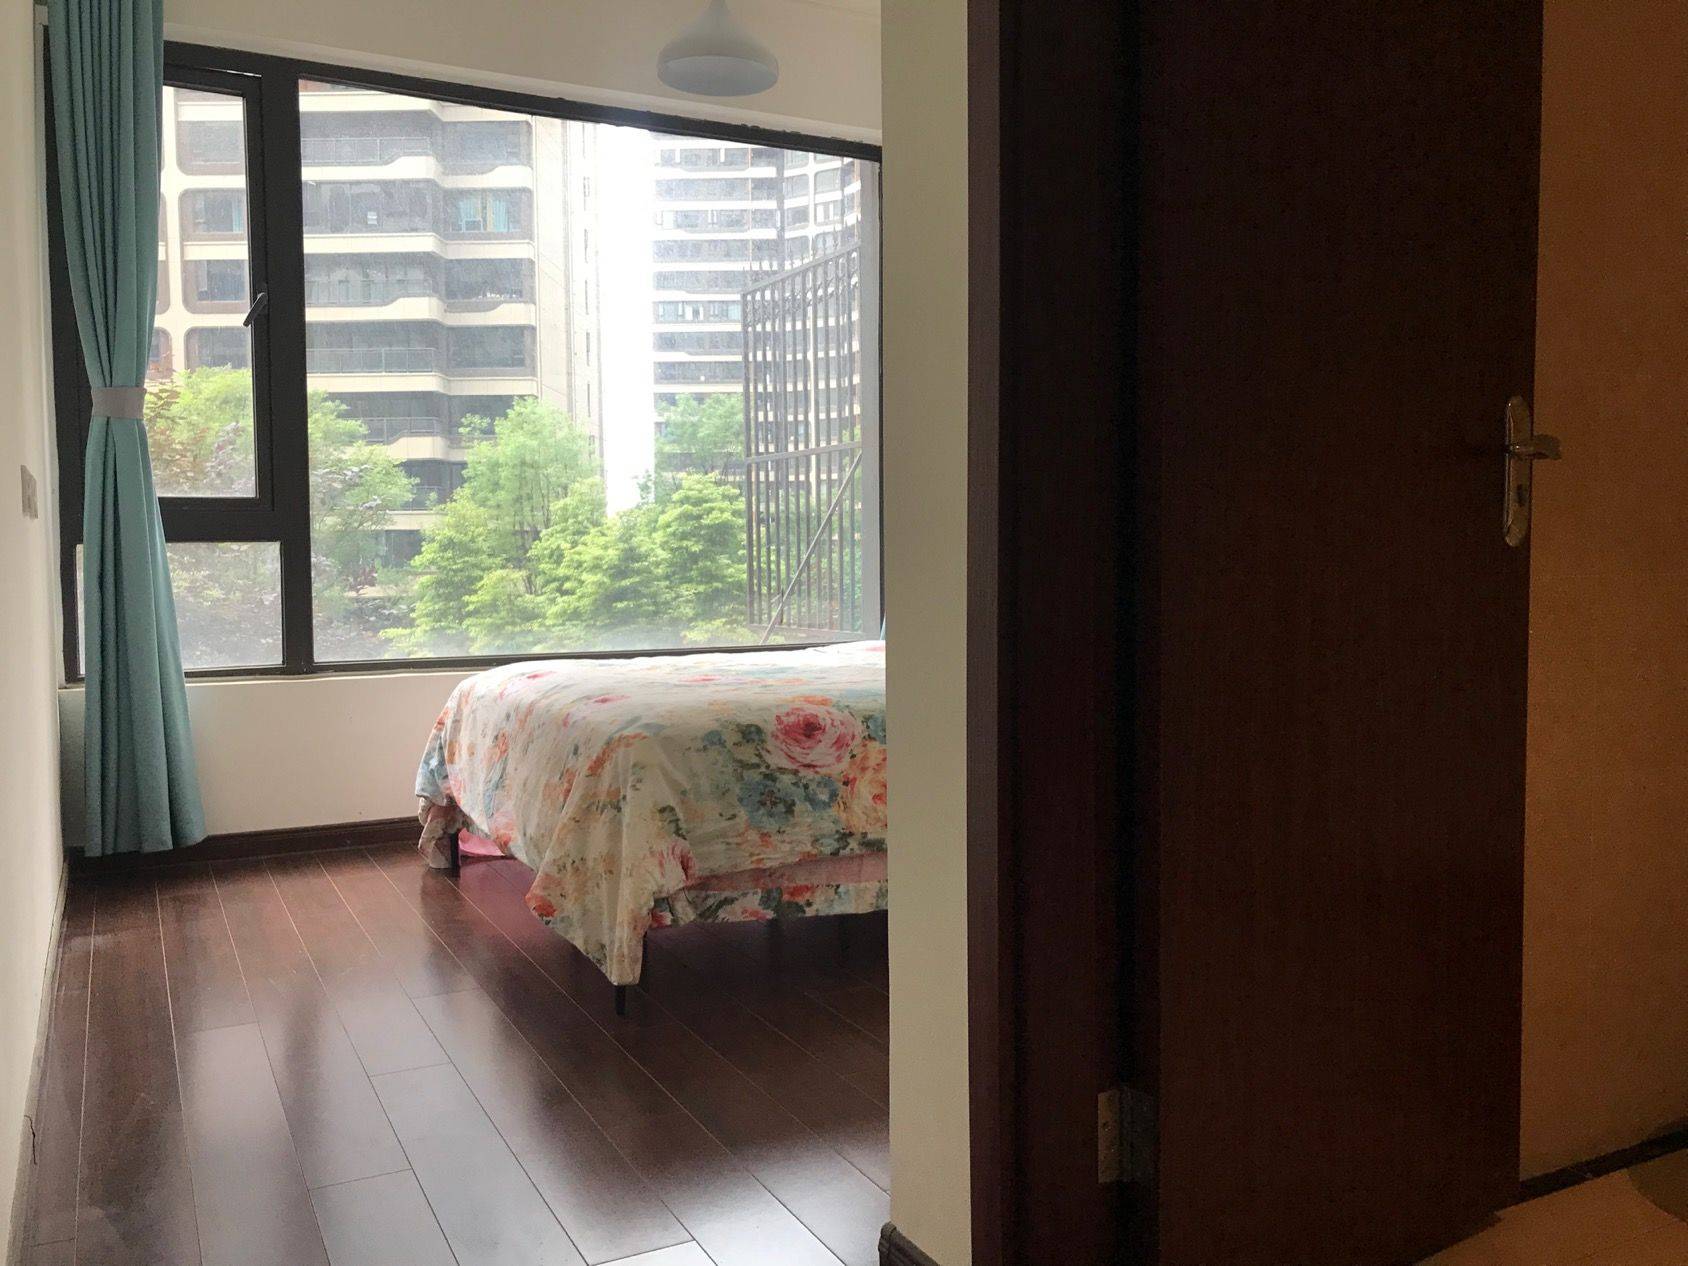 Chengdu-Wuhou-Cozy Home,Clean&Comfy,No Gender Limit,Hustle & Bustle,“Friends”